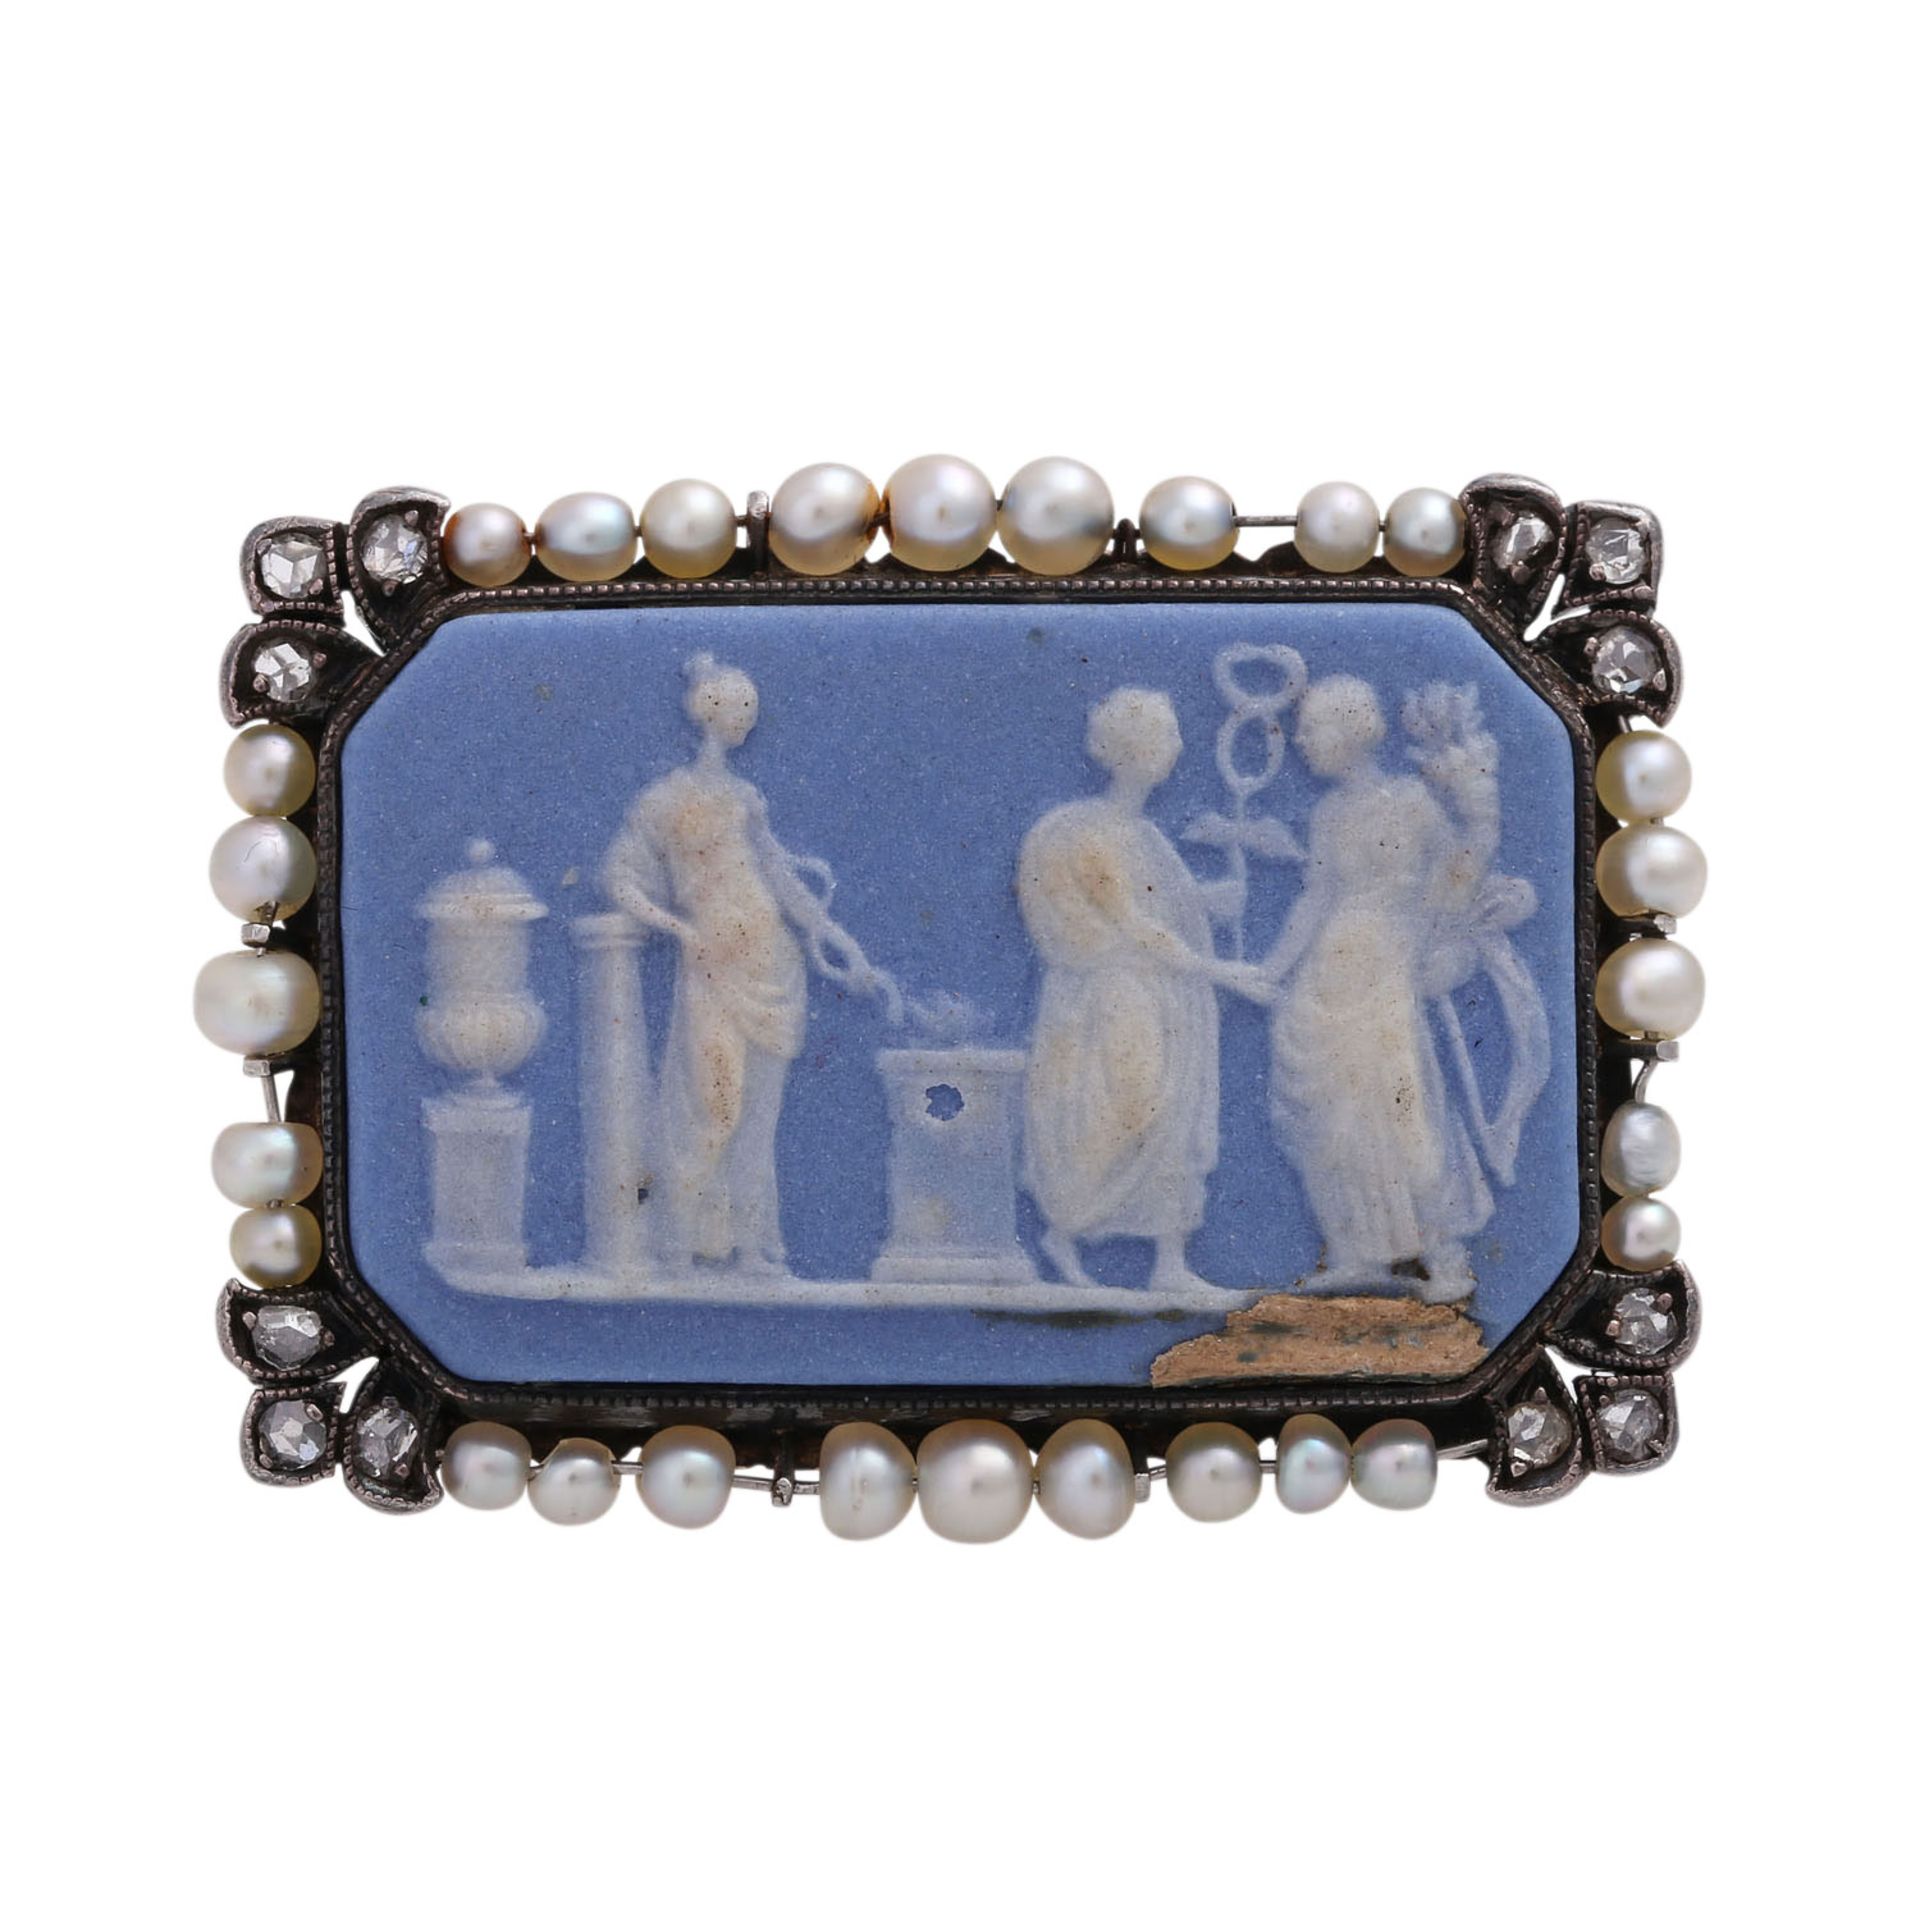 Brosche mit Keramikplatte (Wedgewood), achteckig, hellblau-weiß,mit hübschem Rahmen aus Naturperlen,